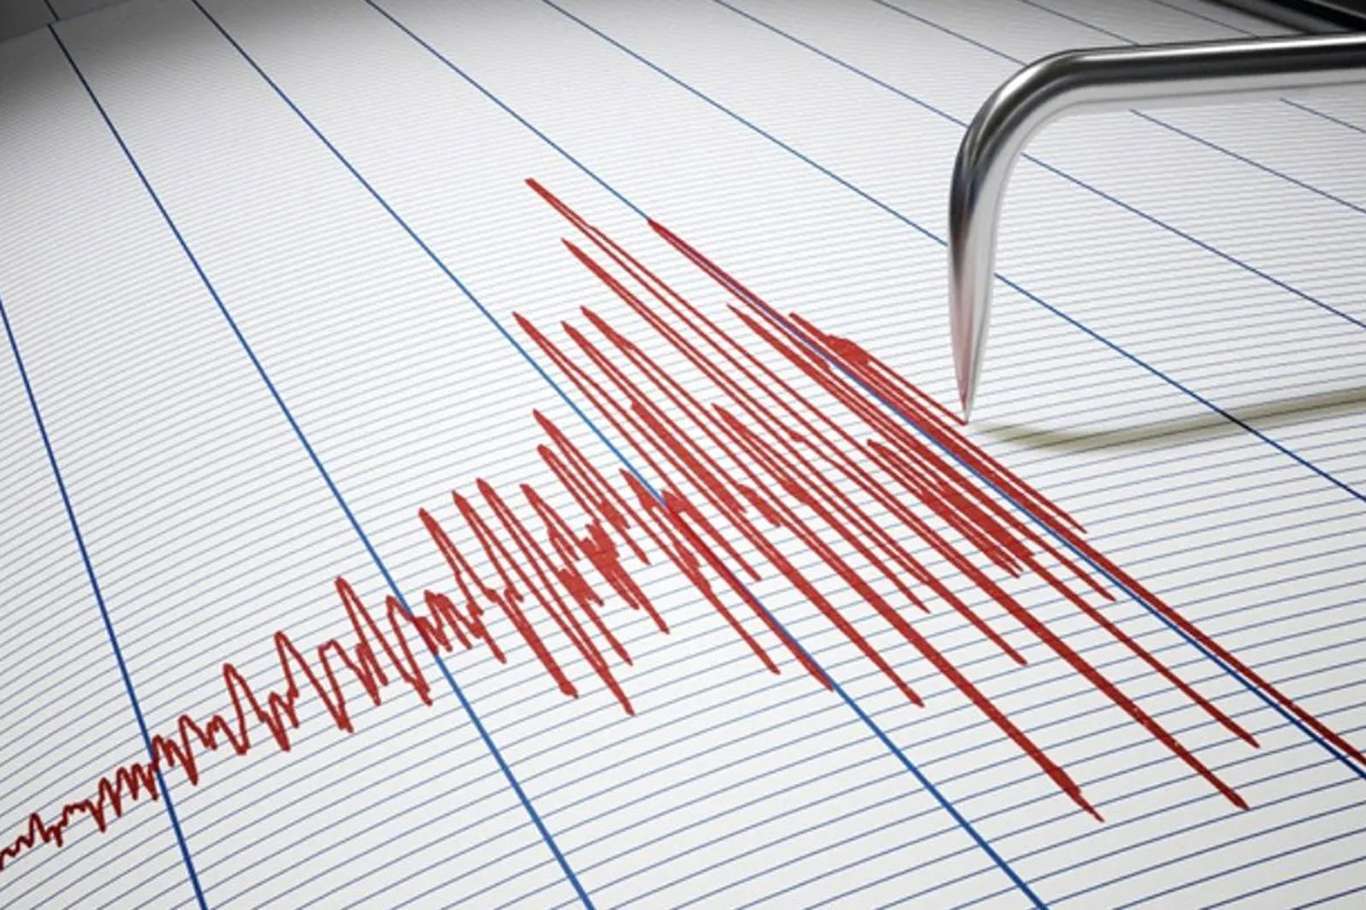 A 6.2 magnitude earthquake hits off Indonesia's Sulawesi Island